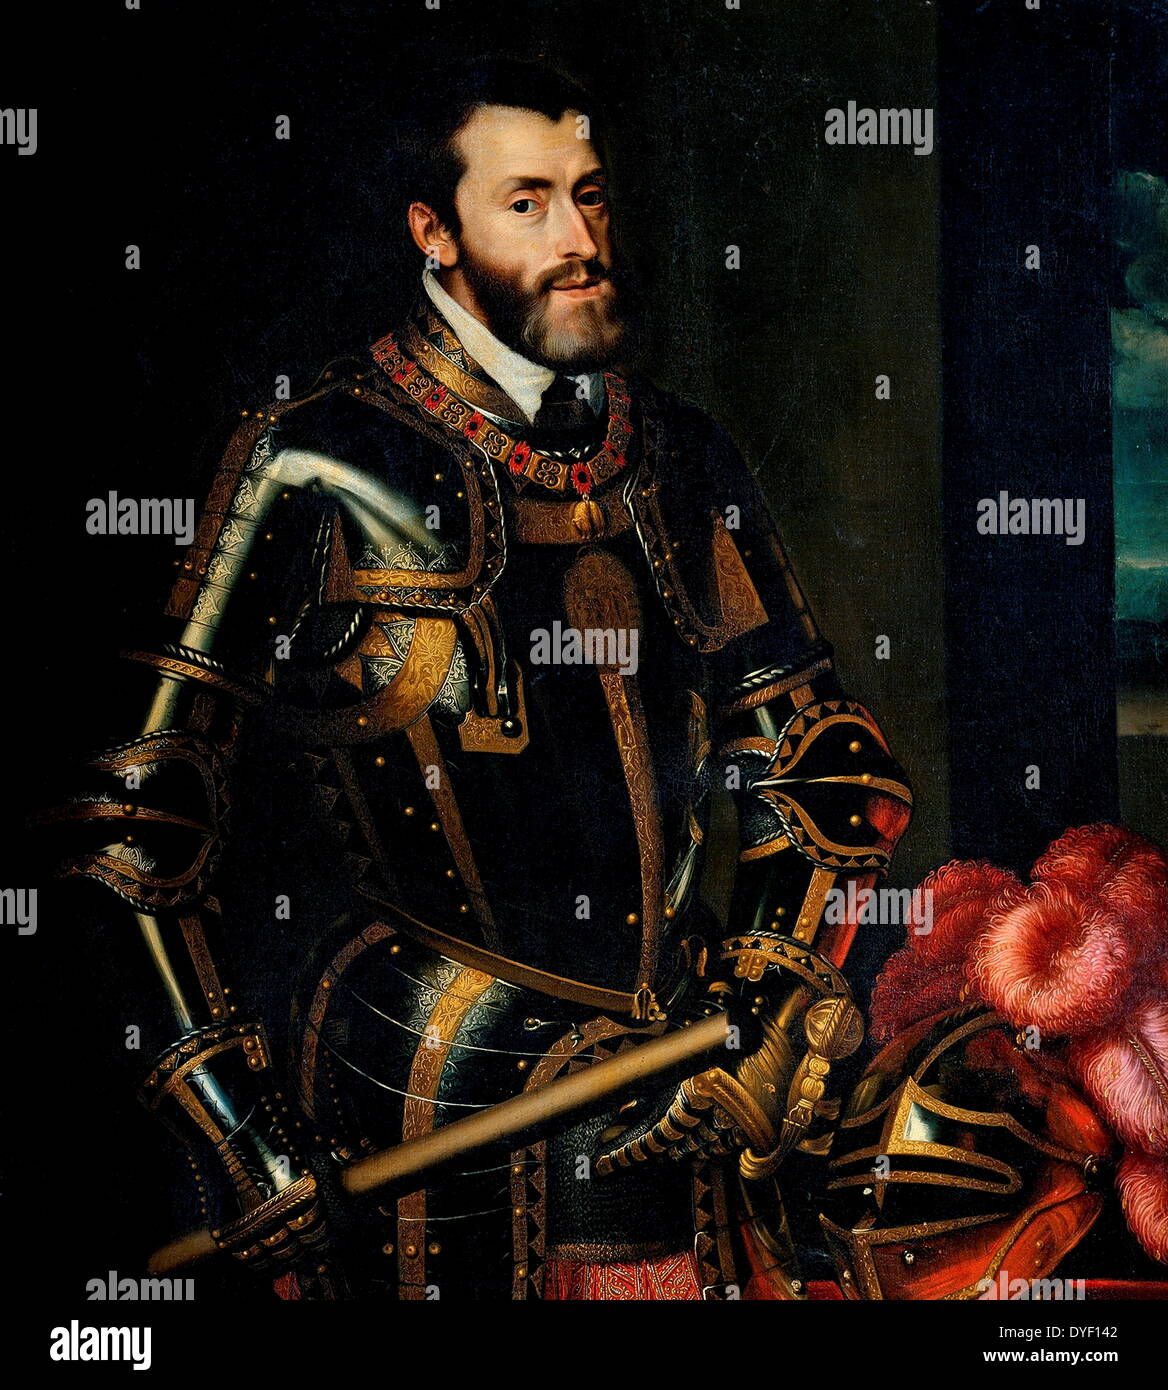 Peinture de Charles V (également connu sous le nom de Carlos I, Karel V, Karl V, Charles V et Charles Quint). Né le 24 février 1500, est décédé le 21 septembre 1558 dans le monastère de Yuste, en Espagne. Est un roi du Saint Empire Romain de 1519 et l'Empire espagnol (comme Charles I) à partir de 1516 jusqu'à son départ volontaire à la retraite et l'abdication en 1556. Sa règle a été ensuite transmise à son jeune frère Ferdinand I et son fils Philippe II. Huile sur toile. Banque D'Images